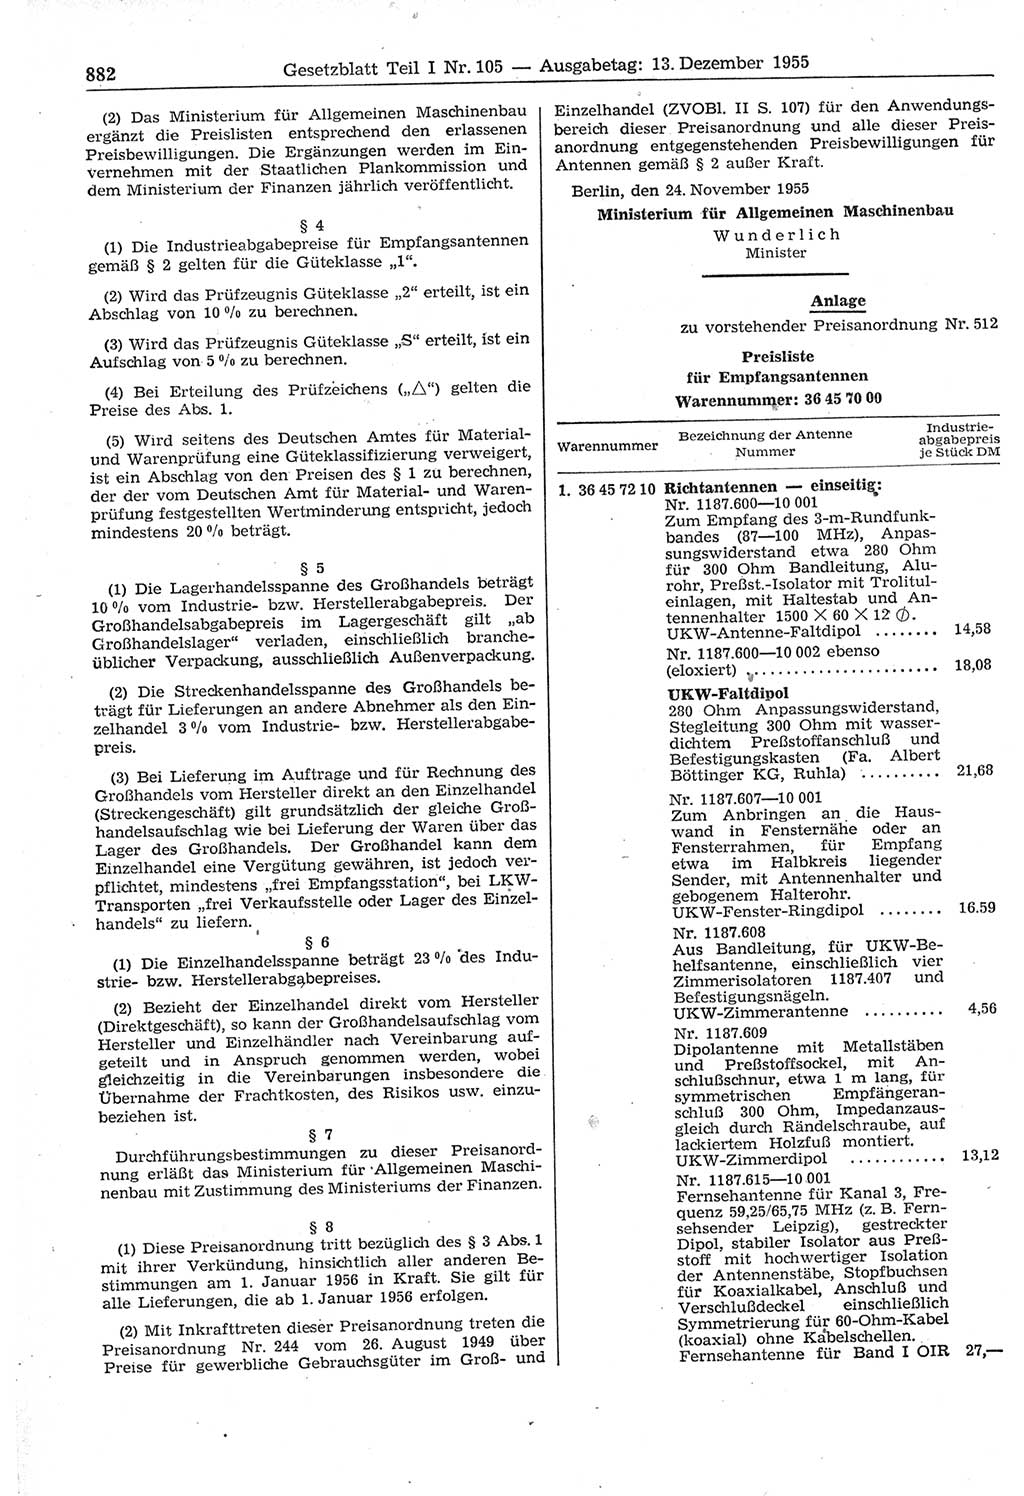 Gesetzblatt (GBl.) der Deutschen Demokratischen Republik (DDR) Teil Ⅰ 1955, Seite 882 (GBl. DDR Ⅰ 1955, S. 882)